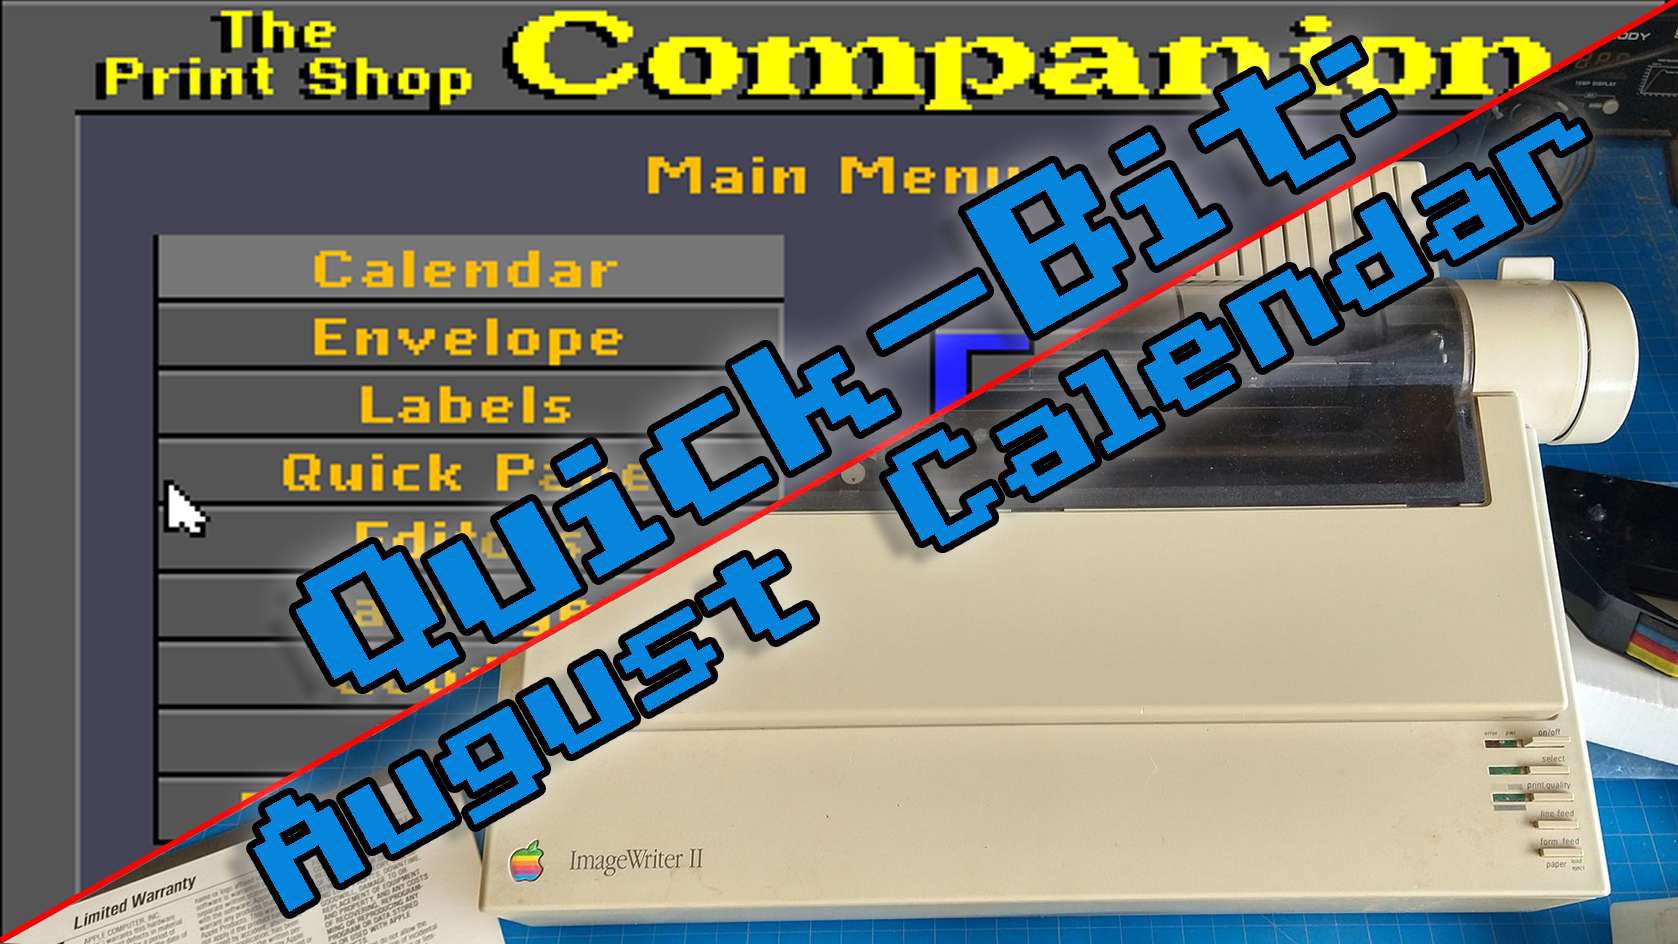 Quick-Bit: August Calendar 2021